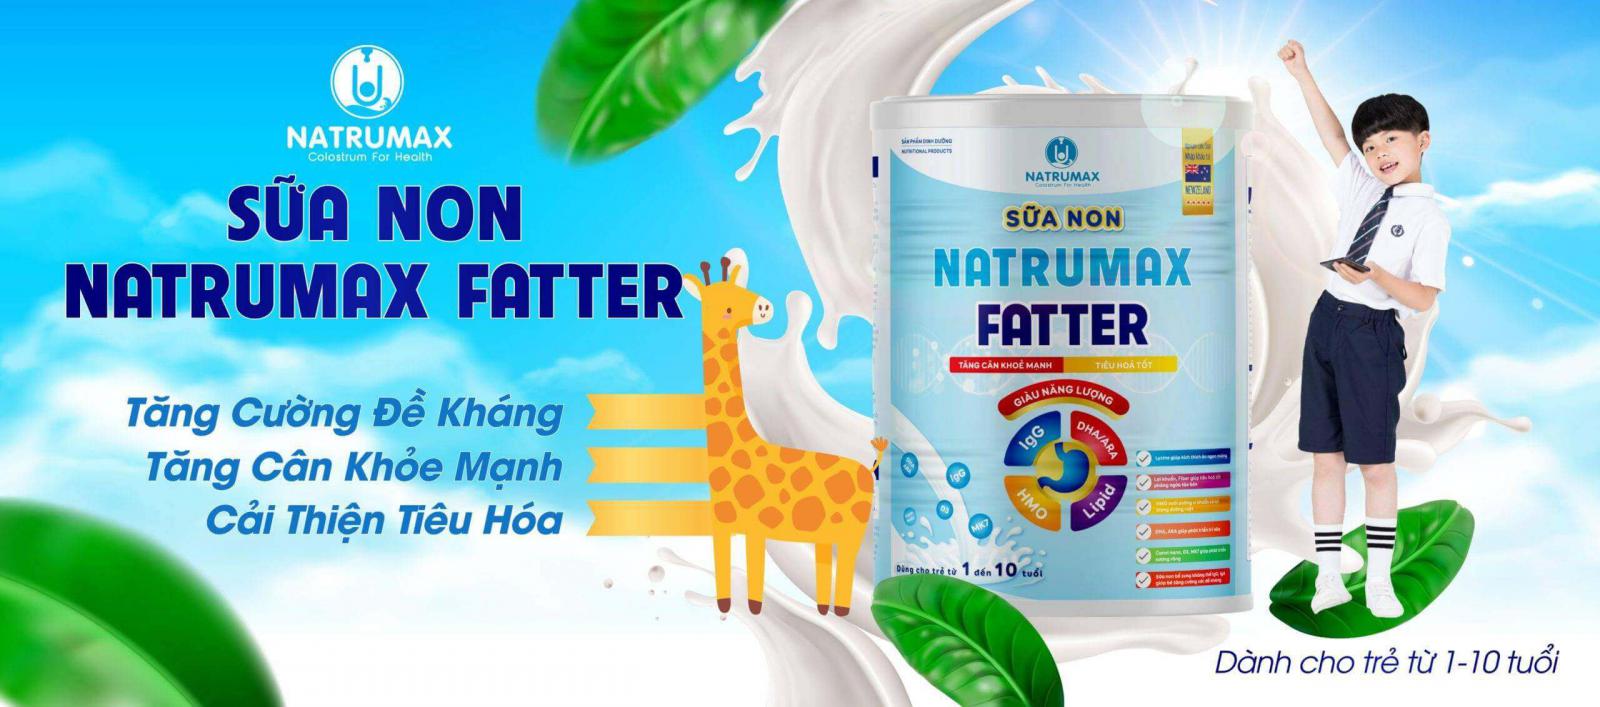 Sữa non Natrumax Fatter có tốt không? Dành cho trẻ 1-10 tuổi